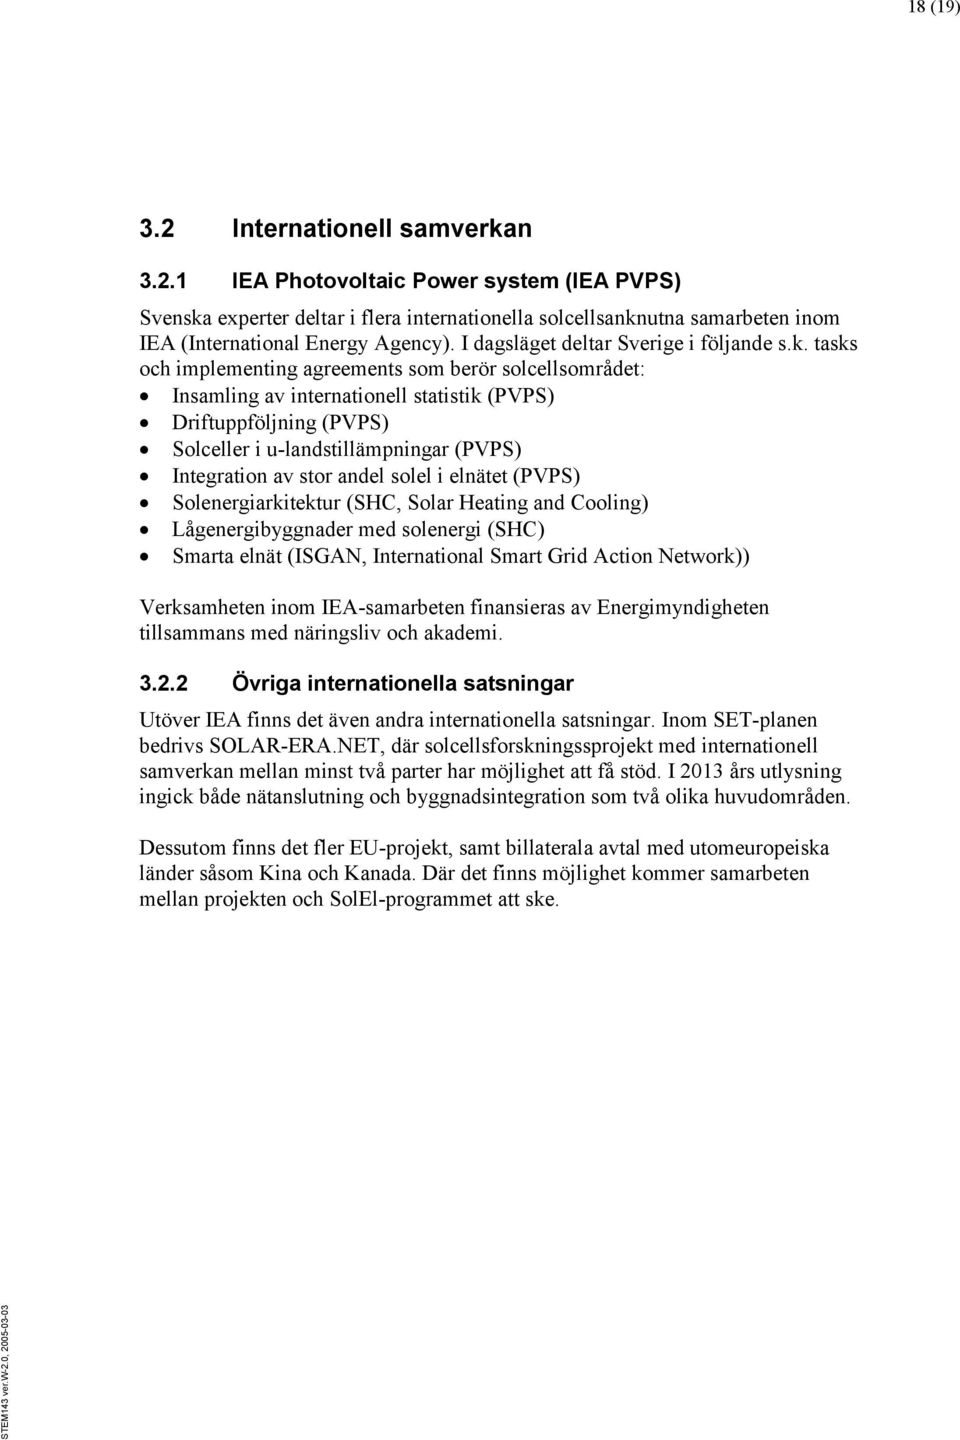 tasks och implementing agreements som berör solcellsområdet: Insamling av internationell statistik (PVPS) Driftuppföljning (PVPS) Solceller i u-landstillämpningar (PVPS) Integration av stor andel